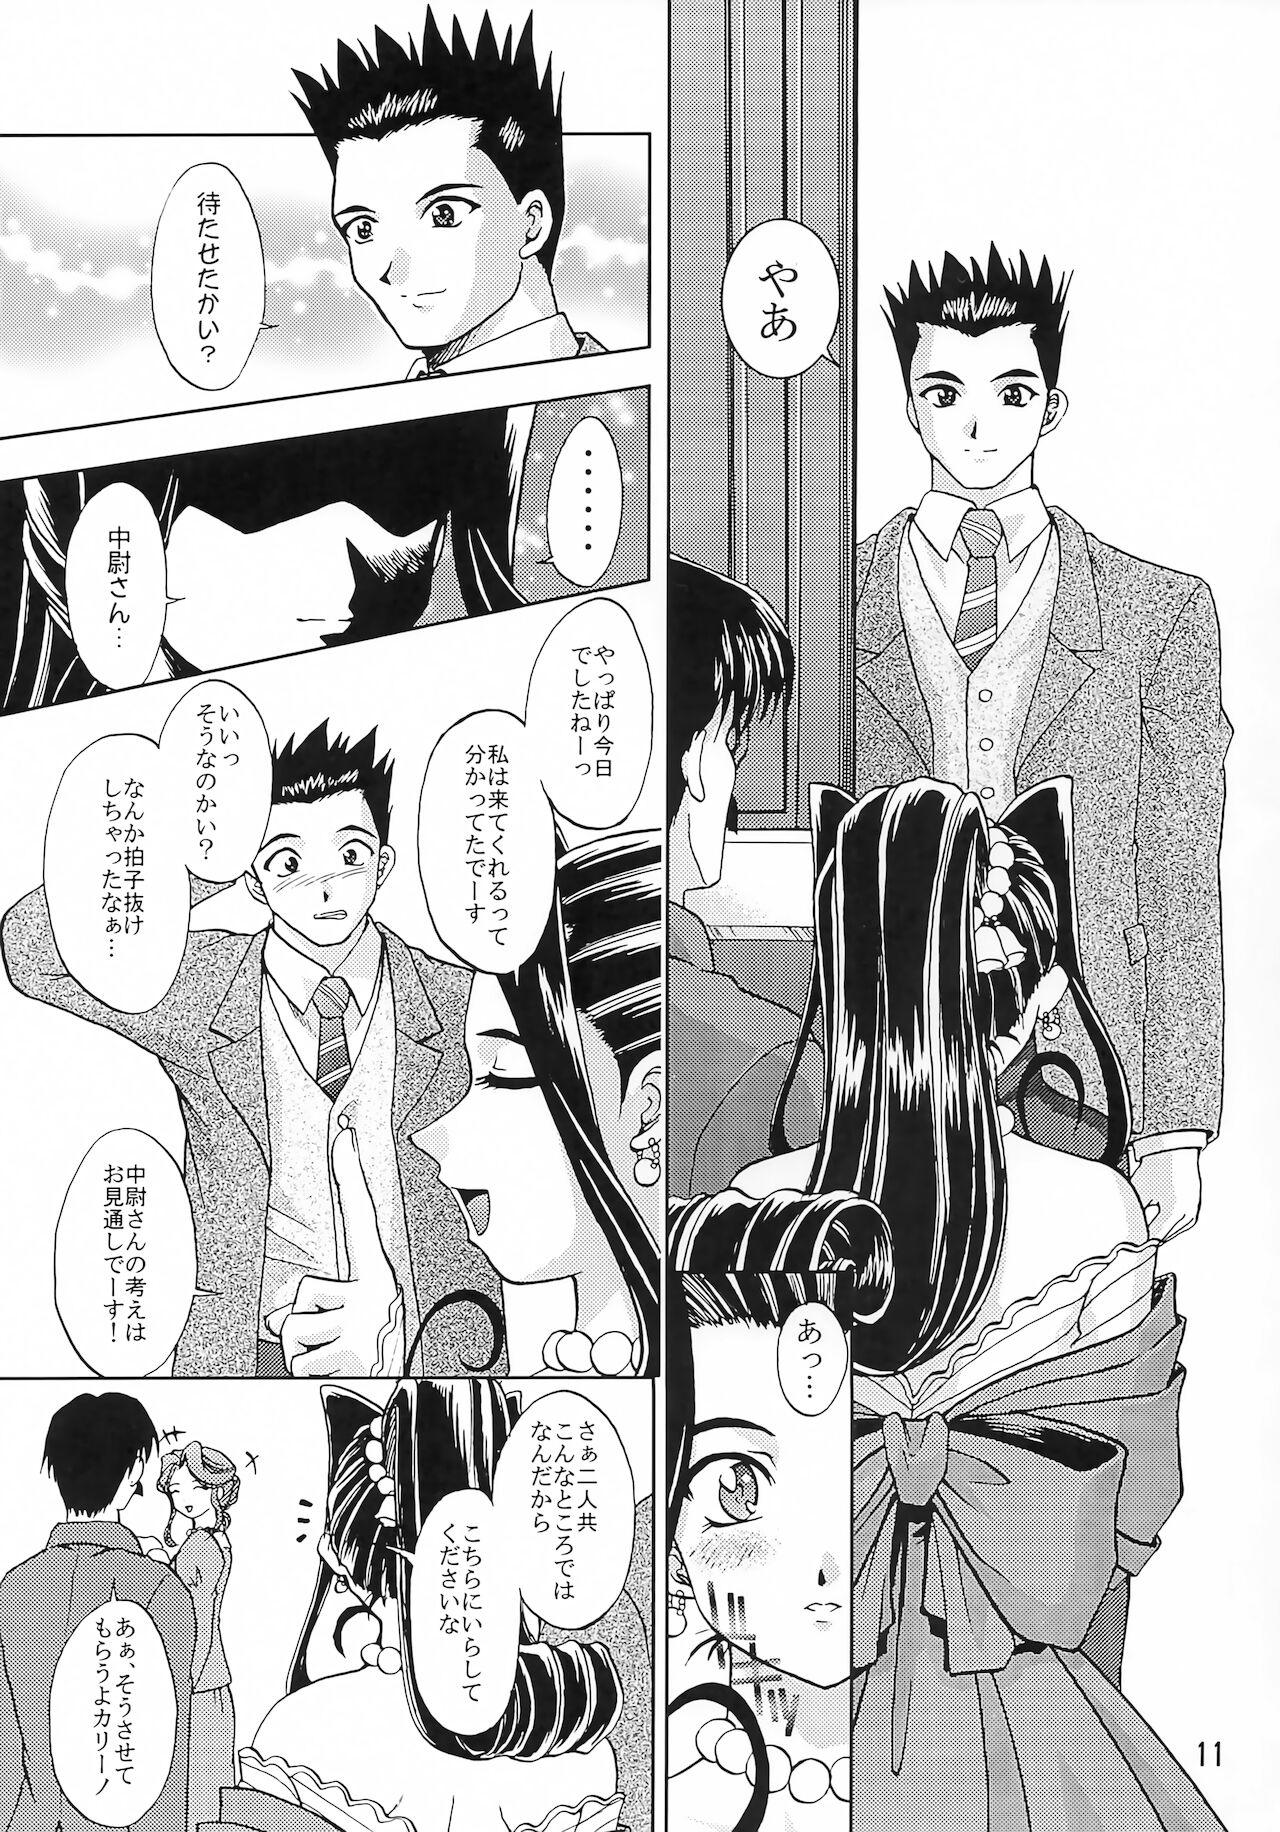 Slutty Otome-tachi no Koiuta Go - Sakura taisen | sakura wars Homosexual - Page 10